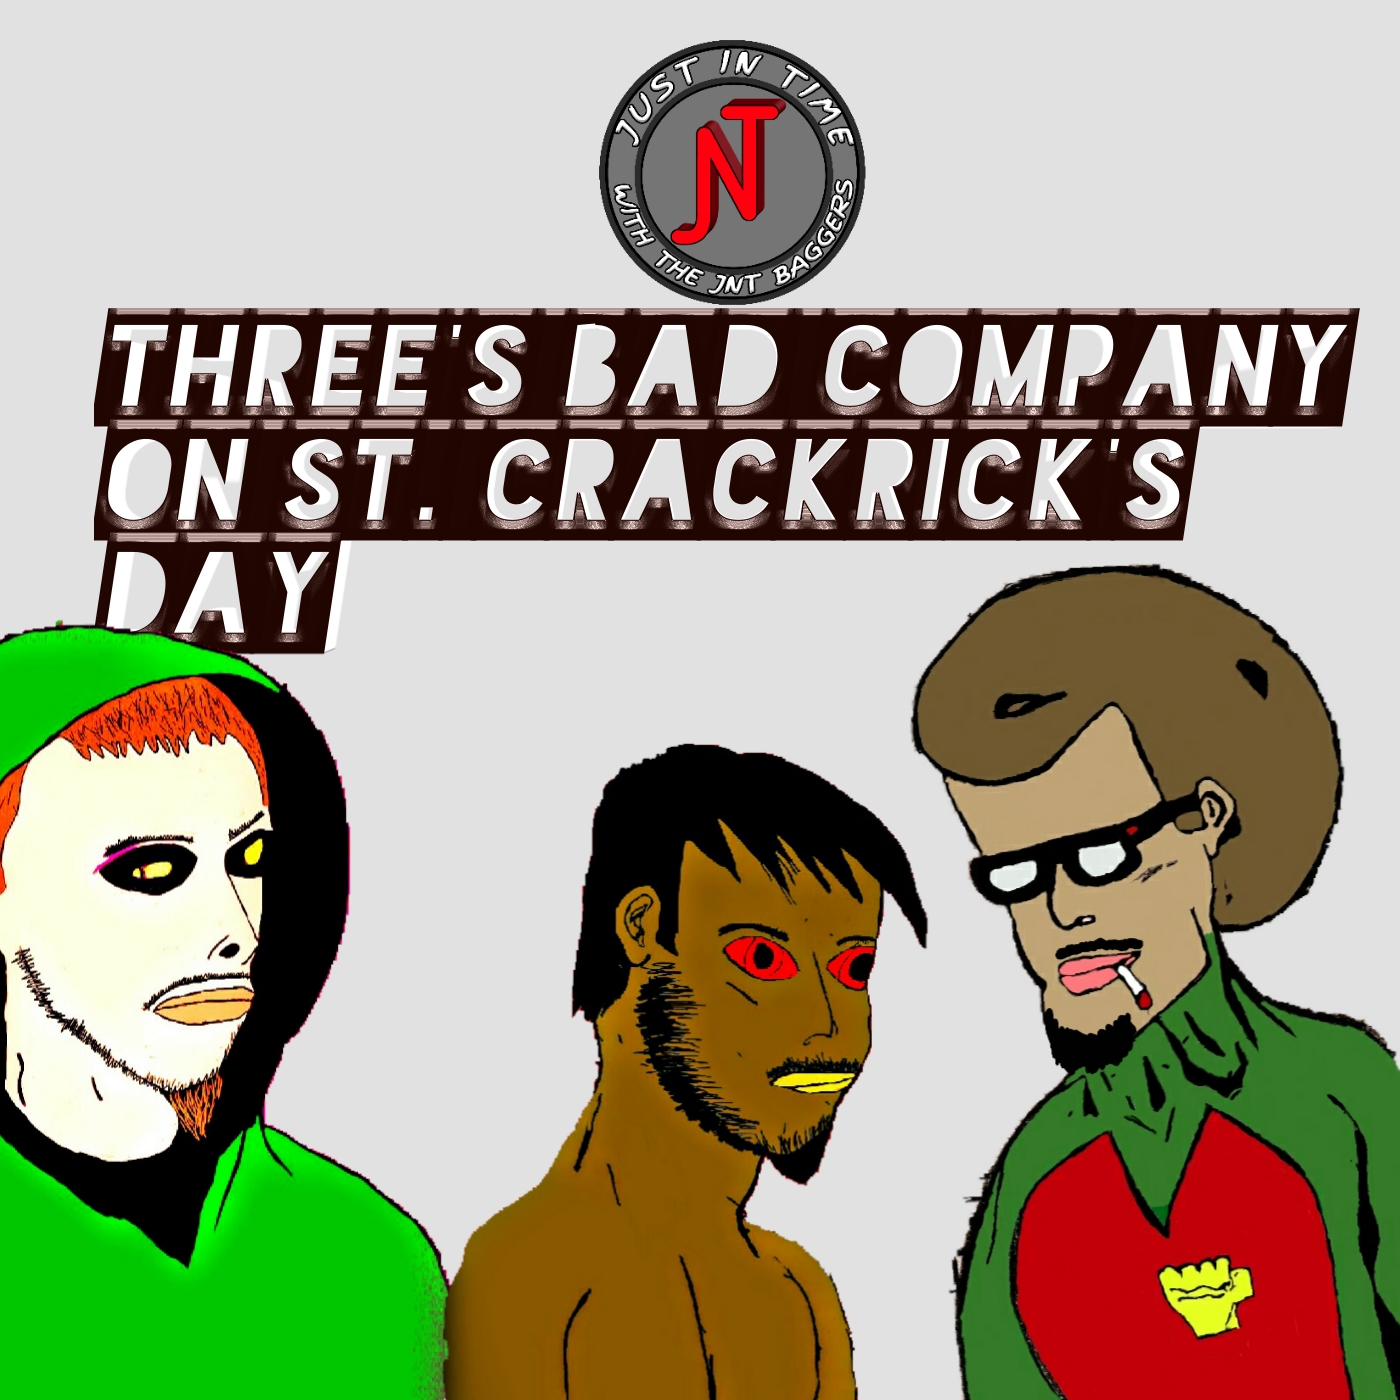 Three's Bad Company On St. Crackrick's Day